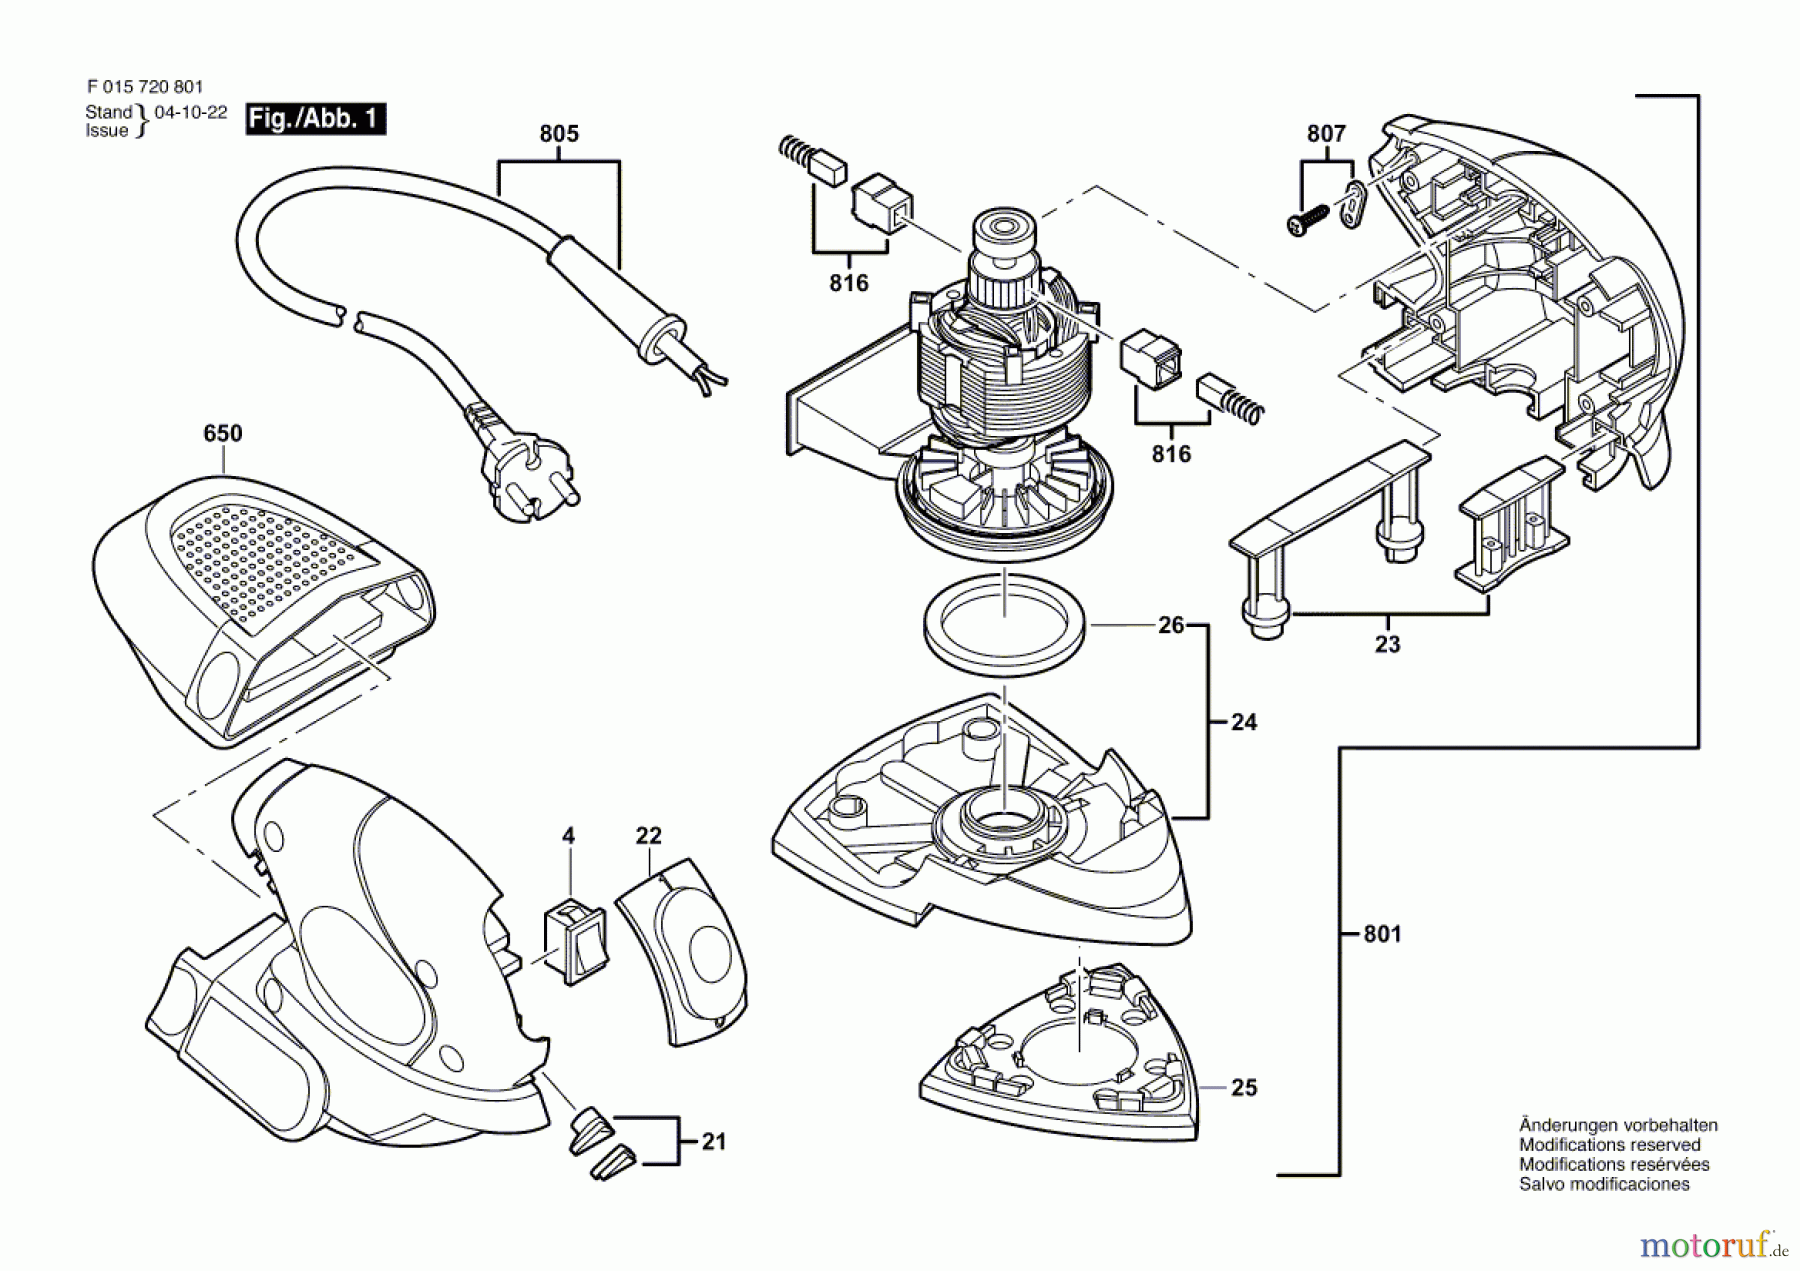  Bosch Werkzeug Schwingschleifer 7208 Seite 1